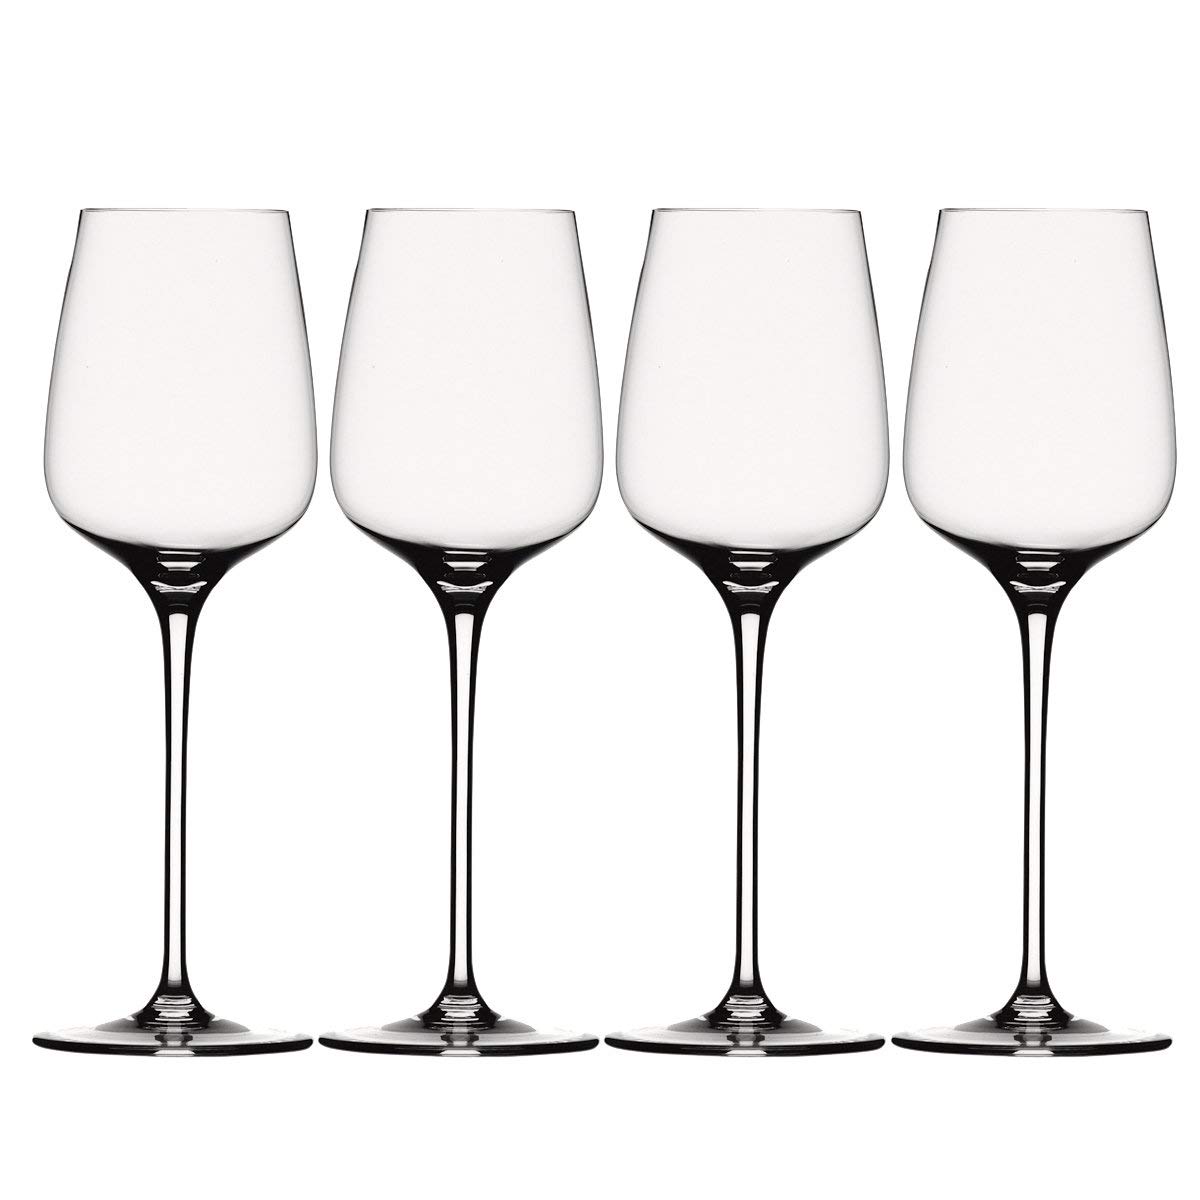 Spiegelau & Nachtmann Willsberger Anniversary Wine Glasses and Decanter ser